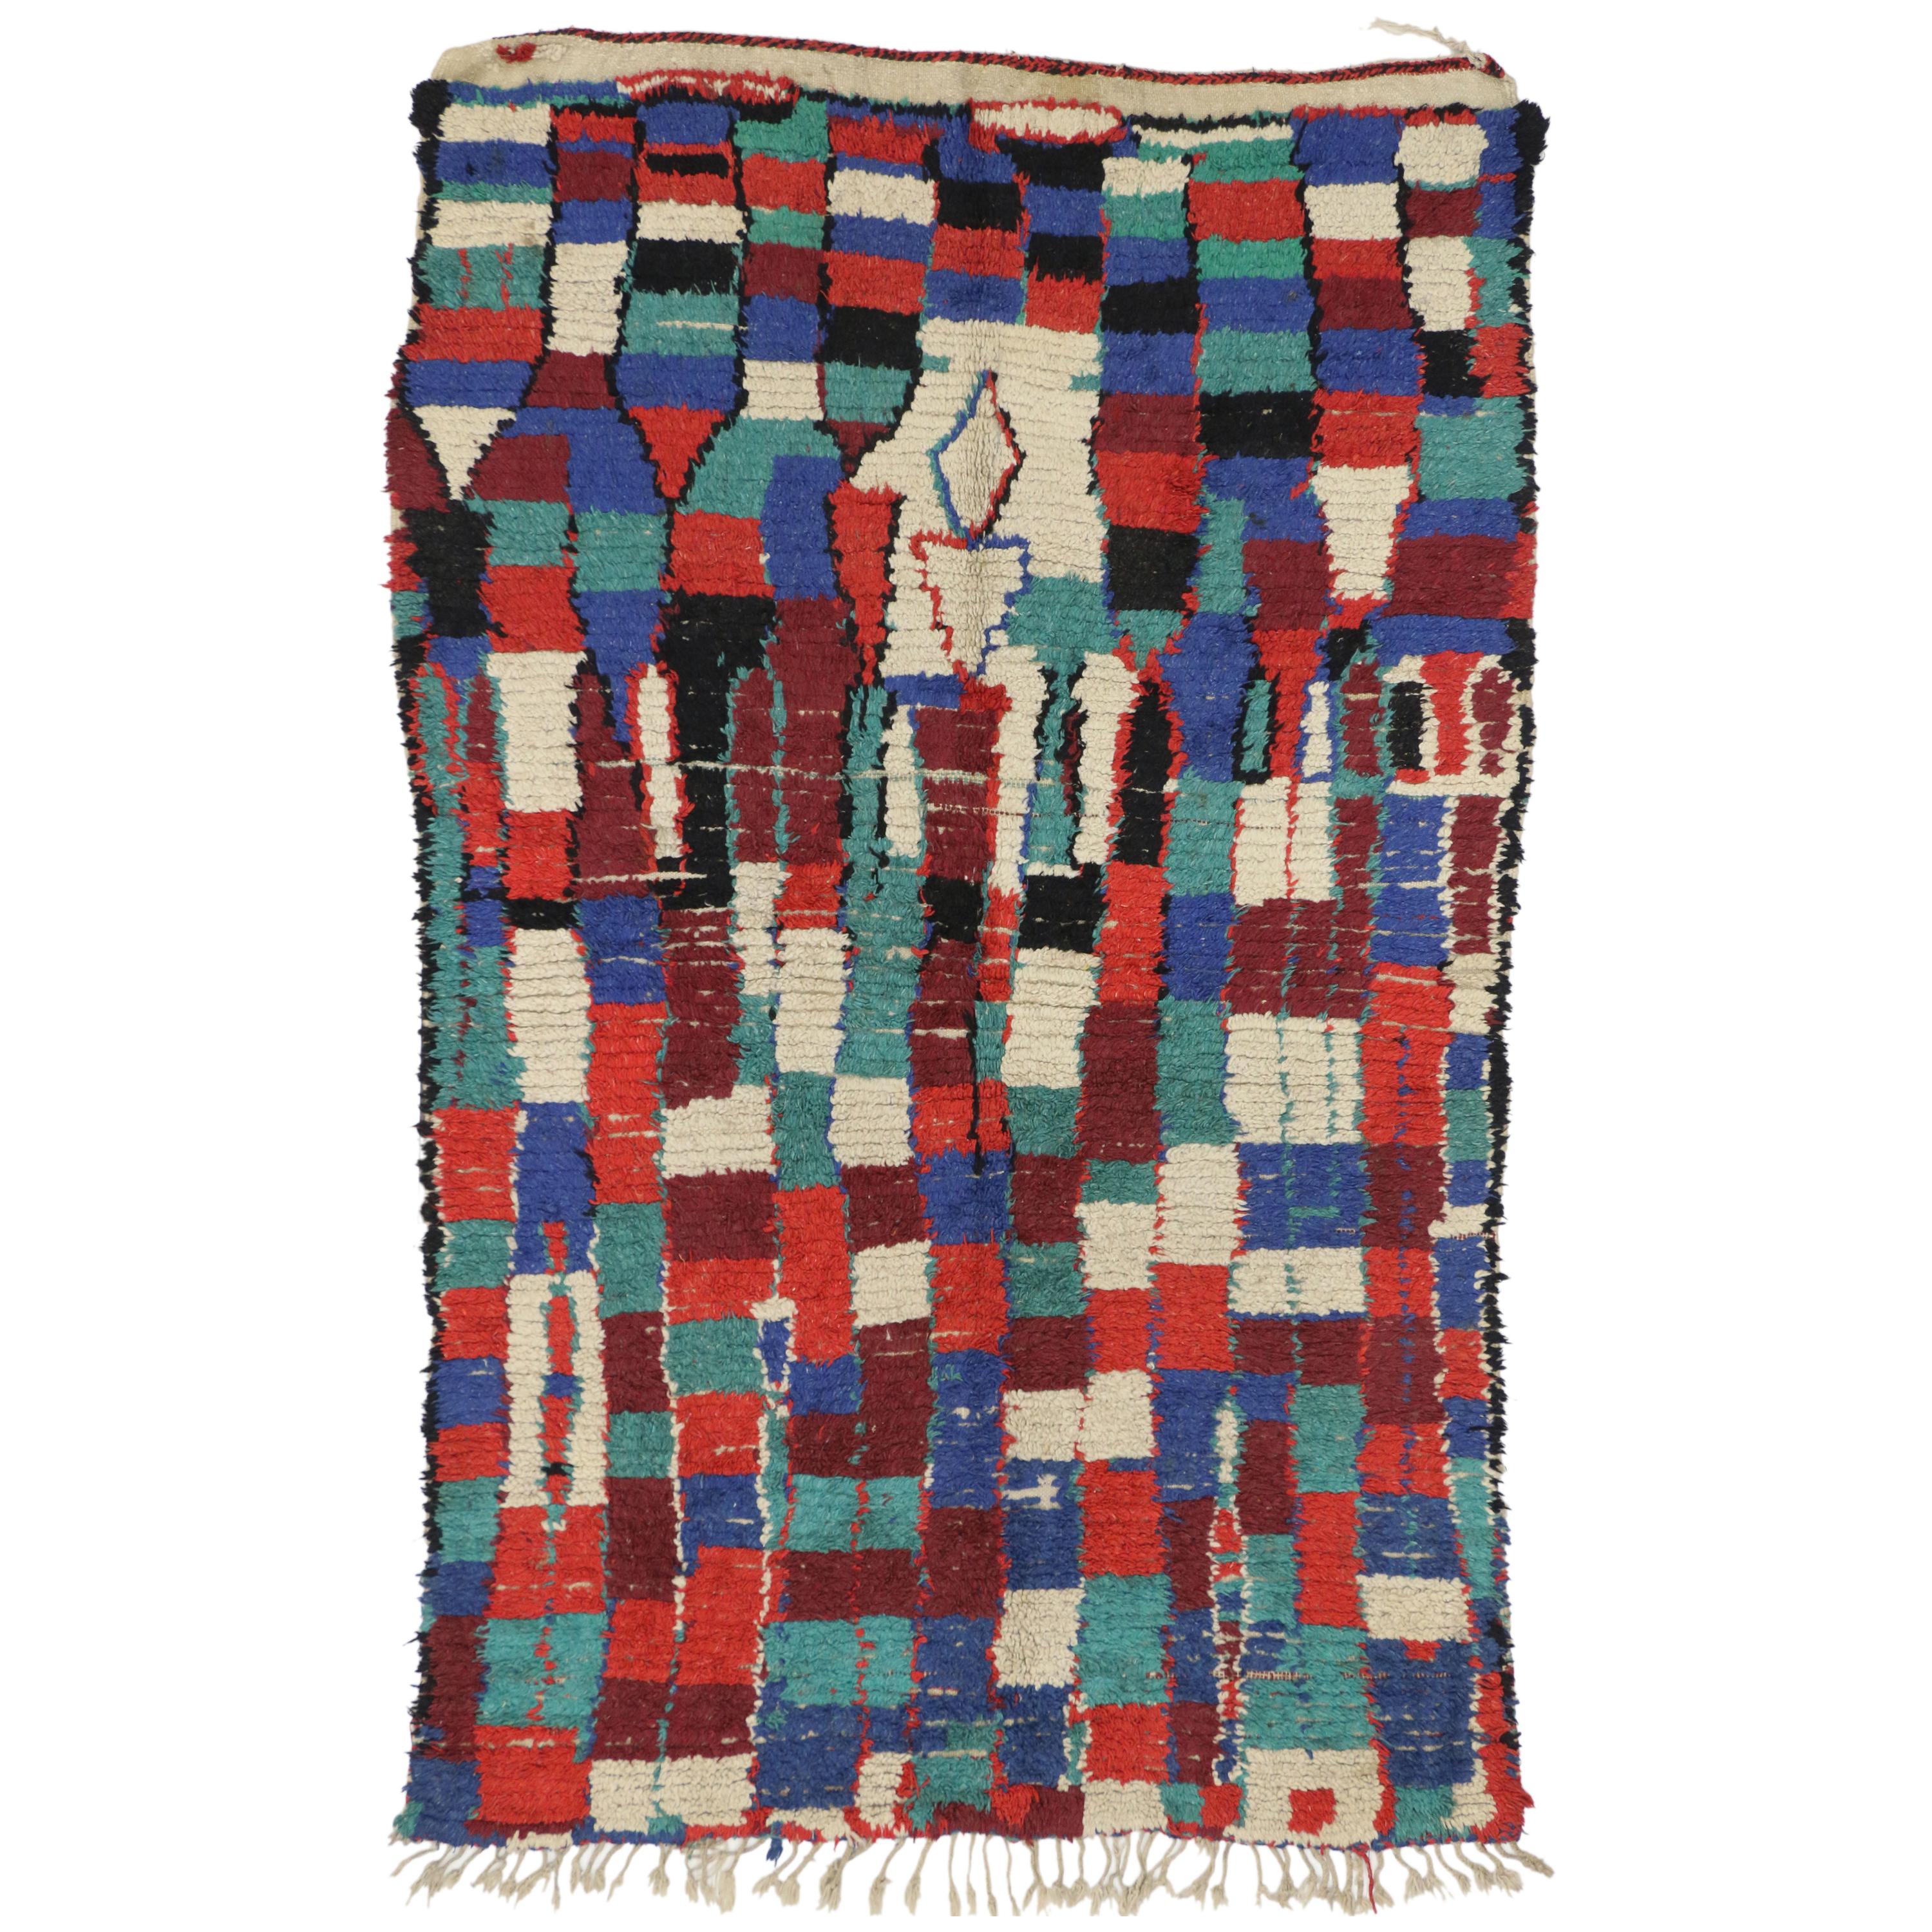 74550, marokkanischer Berberteppich Azilal im postmodernen Bauhaus- und Kubismus-Stil. Dieser moderne marokkanische Azilal-Teppich aus handgeknüpfter Wolle im postmodernen Bauhaus- und Kubismus-Stil zeichnet sich durch ein asymmetrisches grafisches